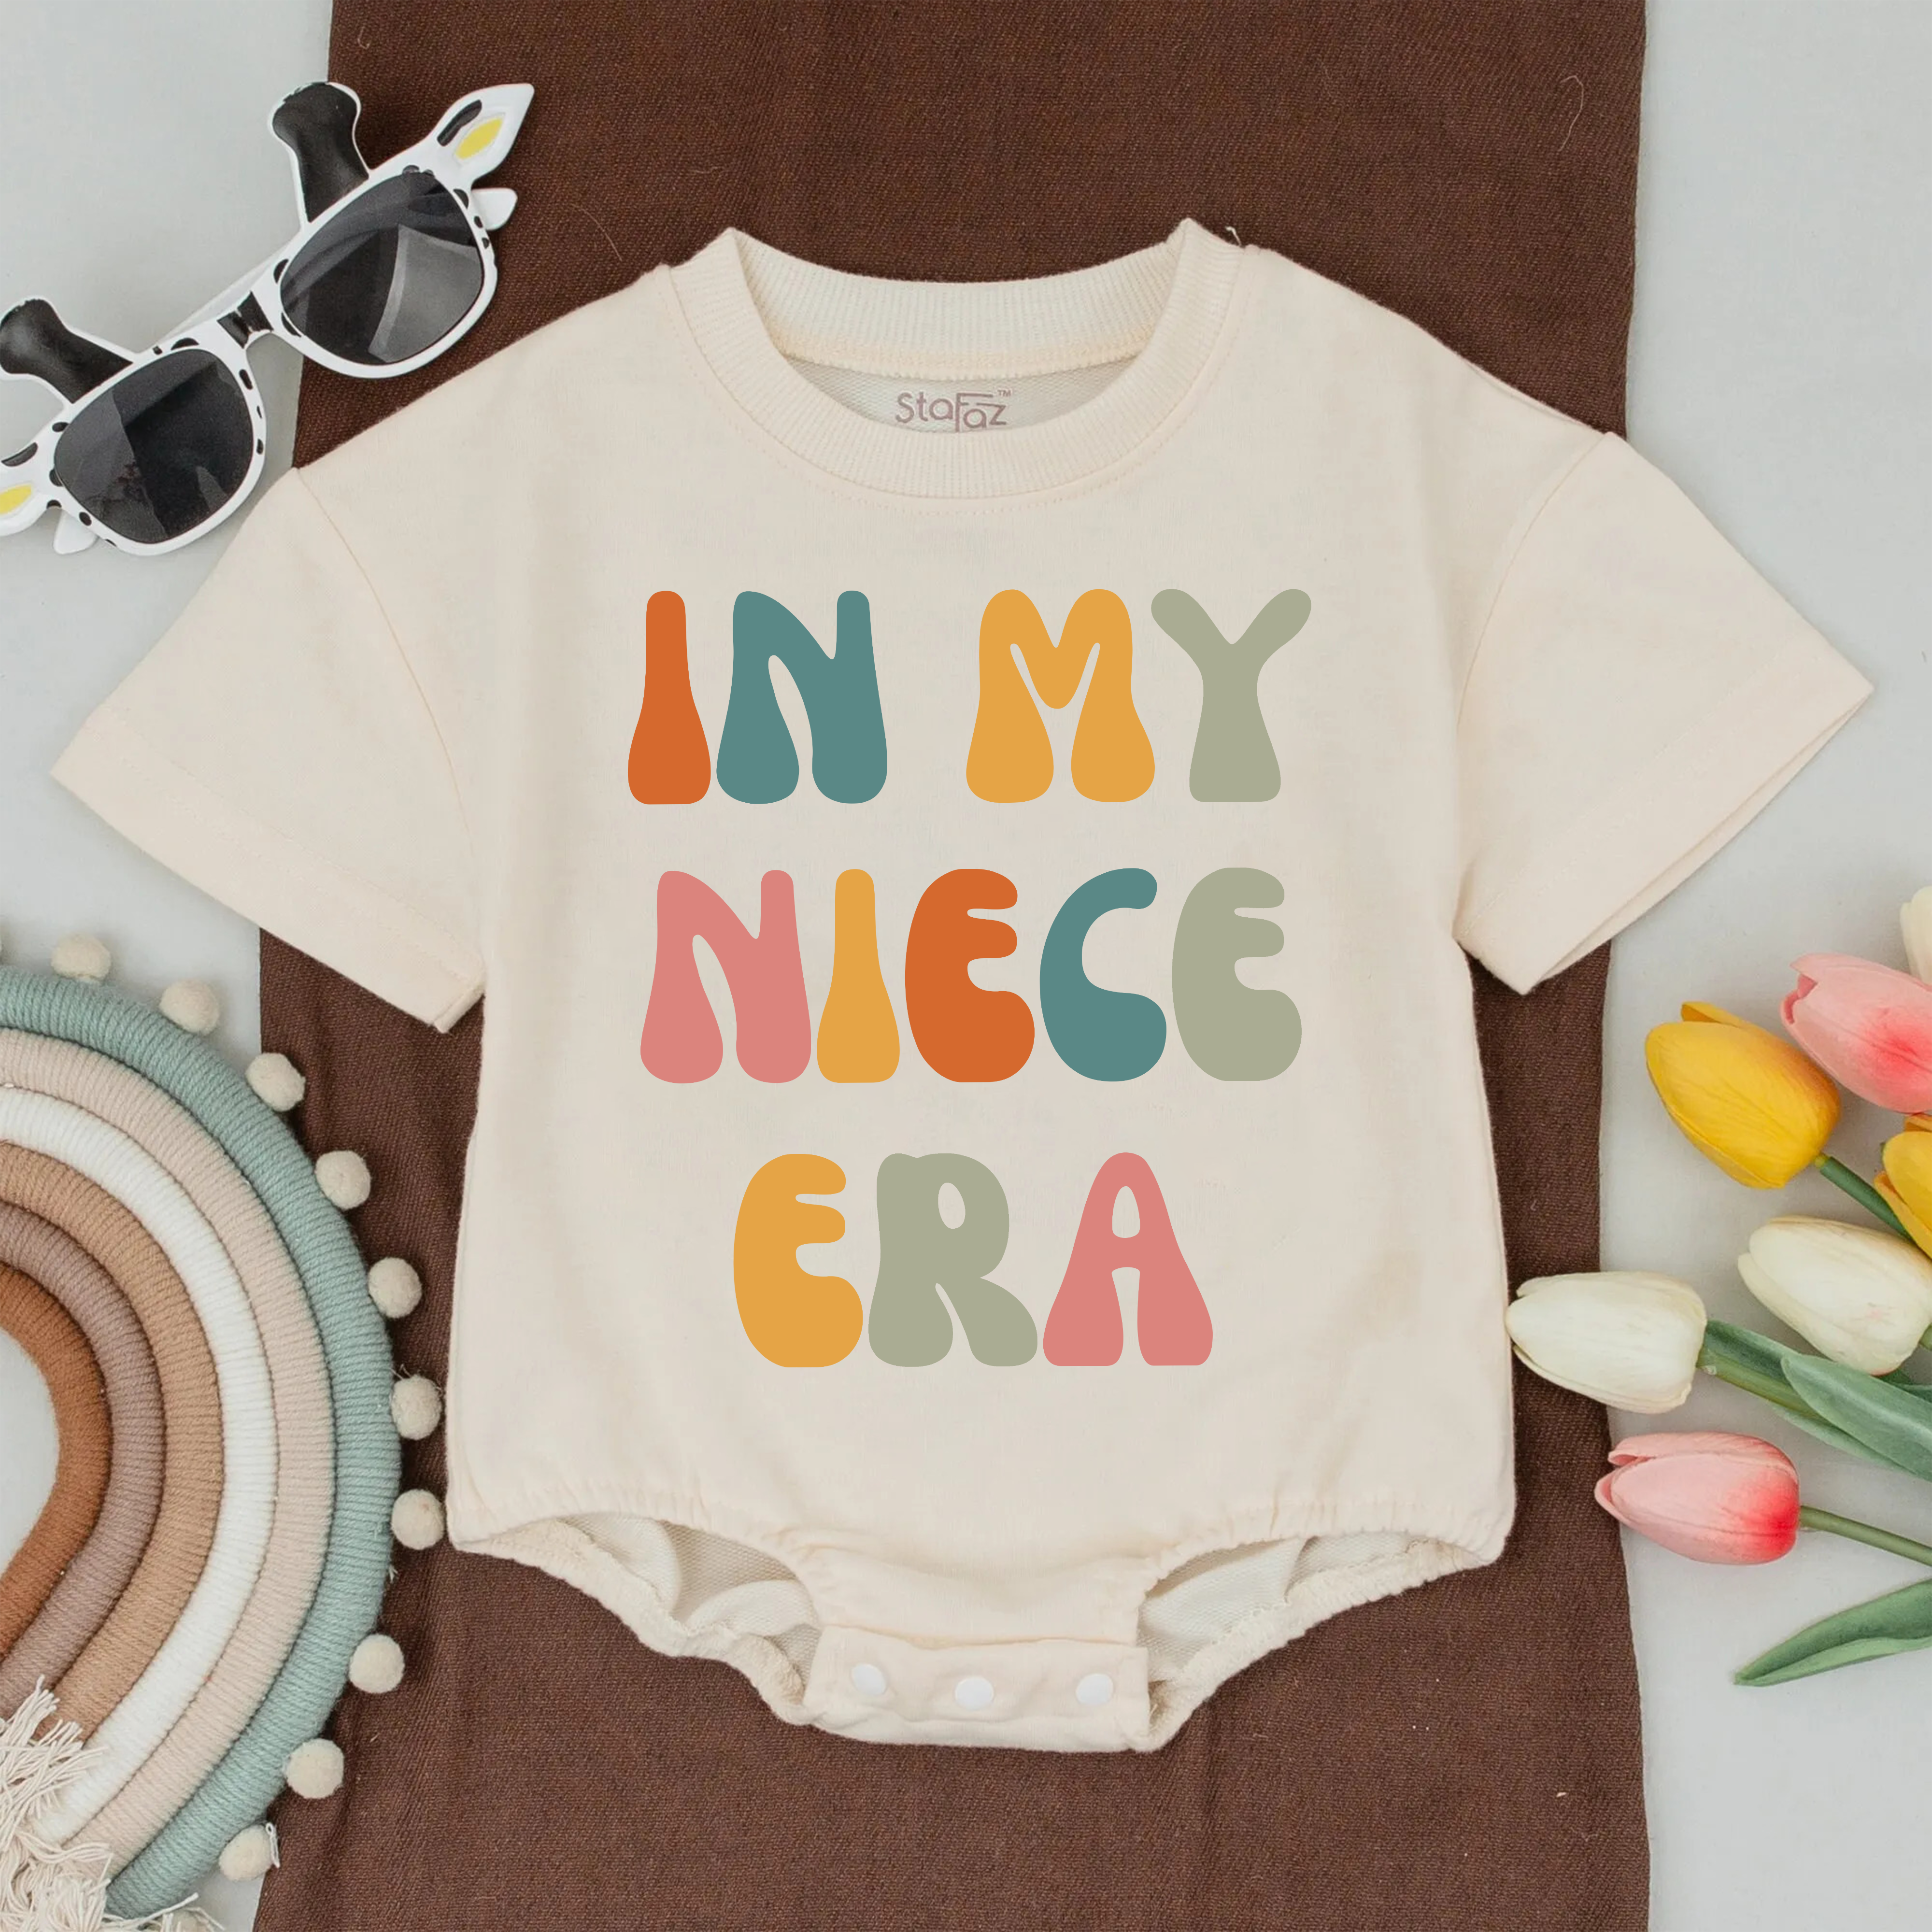 In My Auntie Era And Niece Era Baby Romper Matching: Custom Family T-Shirt!